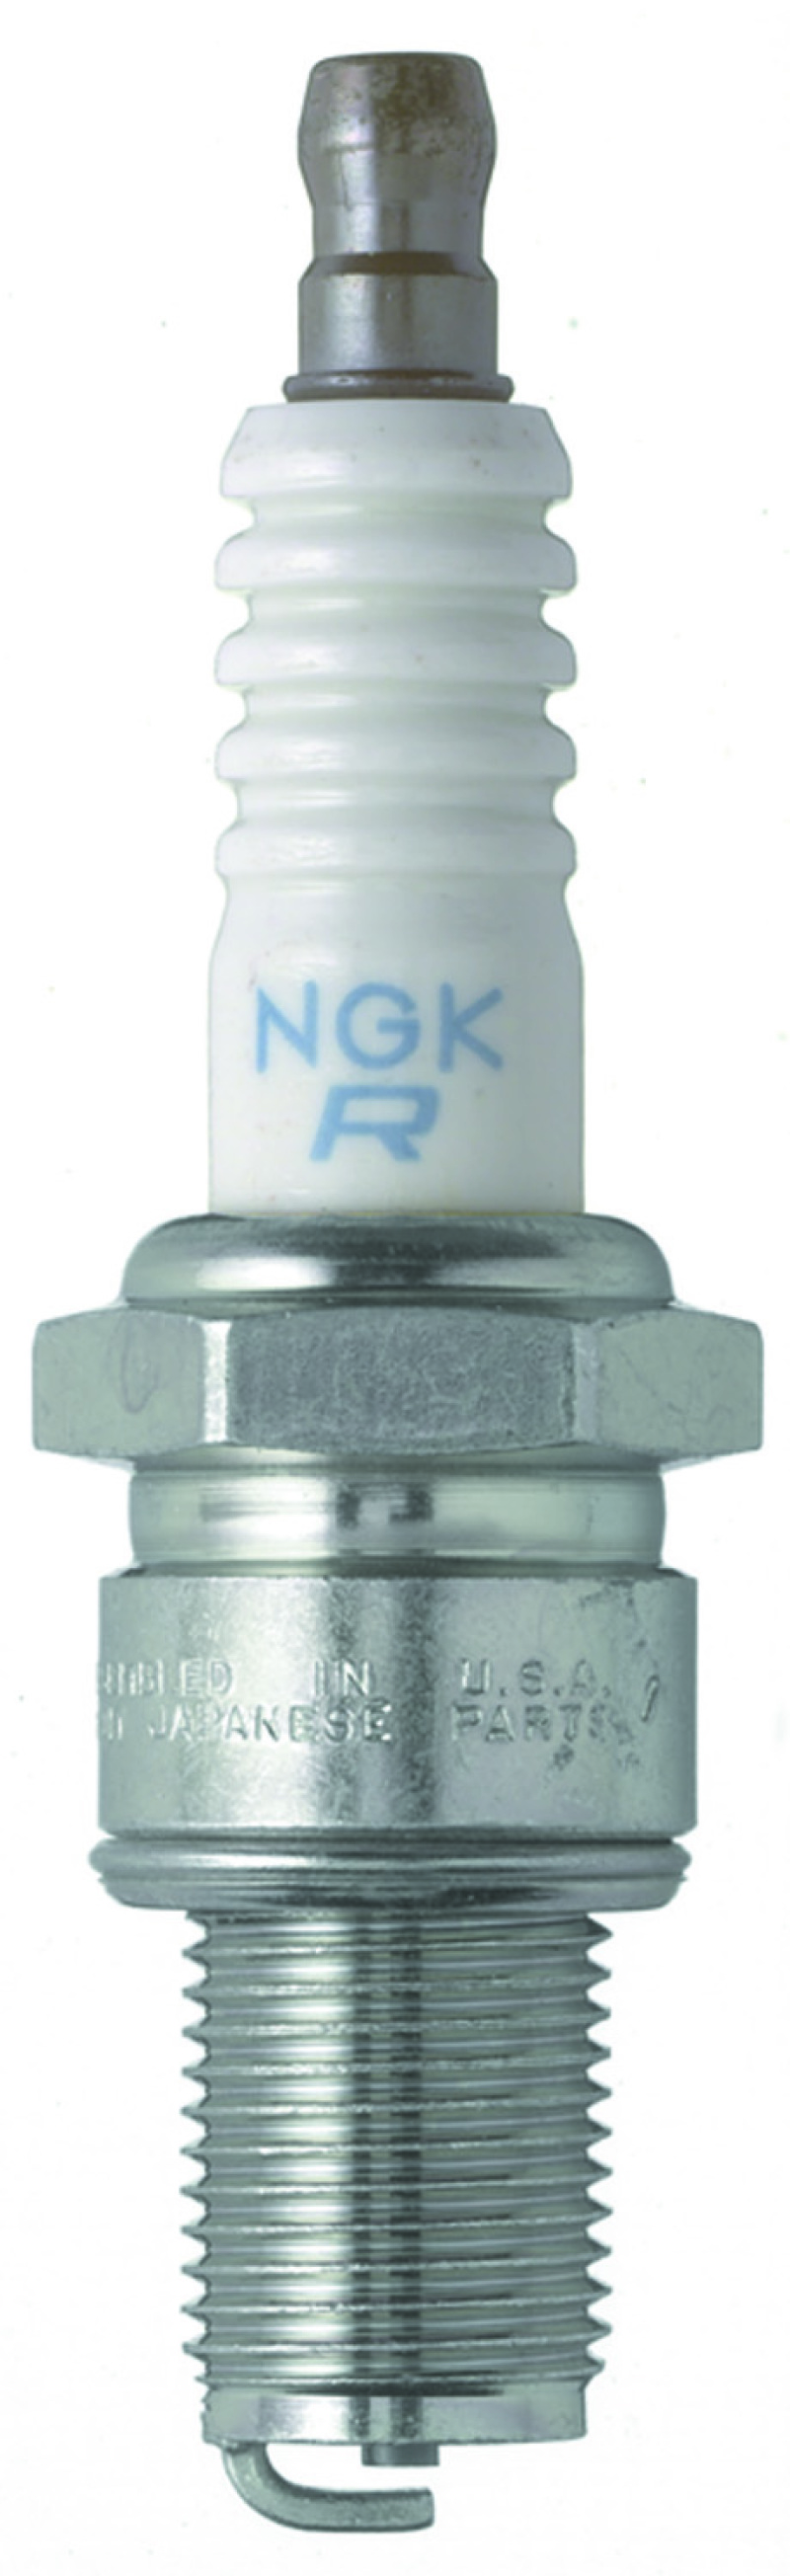 NGK Standard Spark Plug Box of 4 (BR10ES SOLID) - 4684